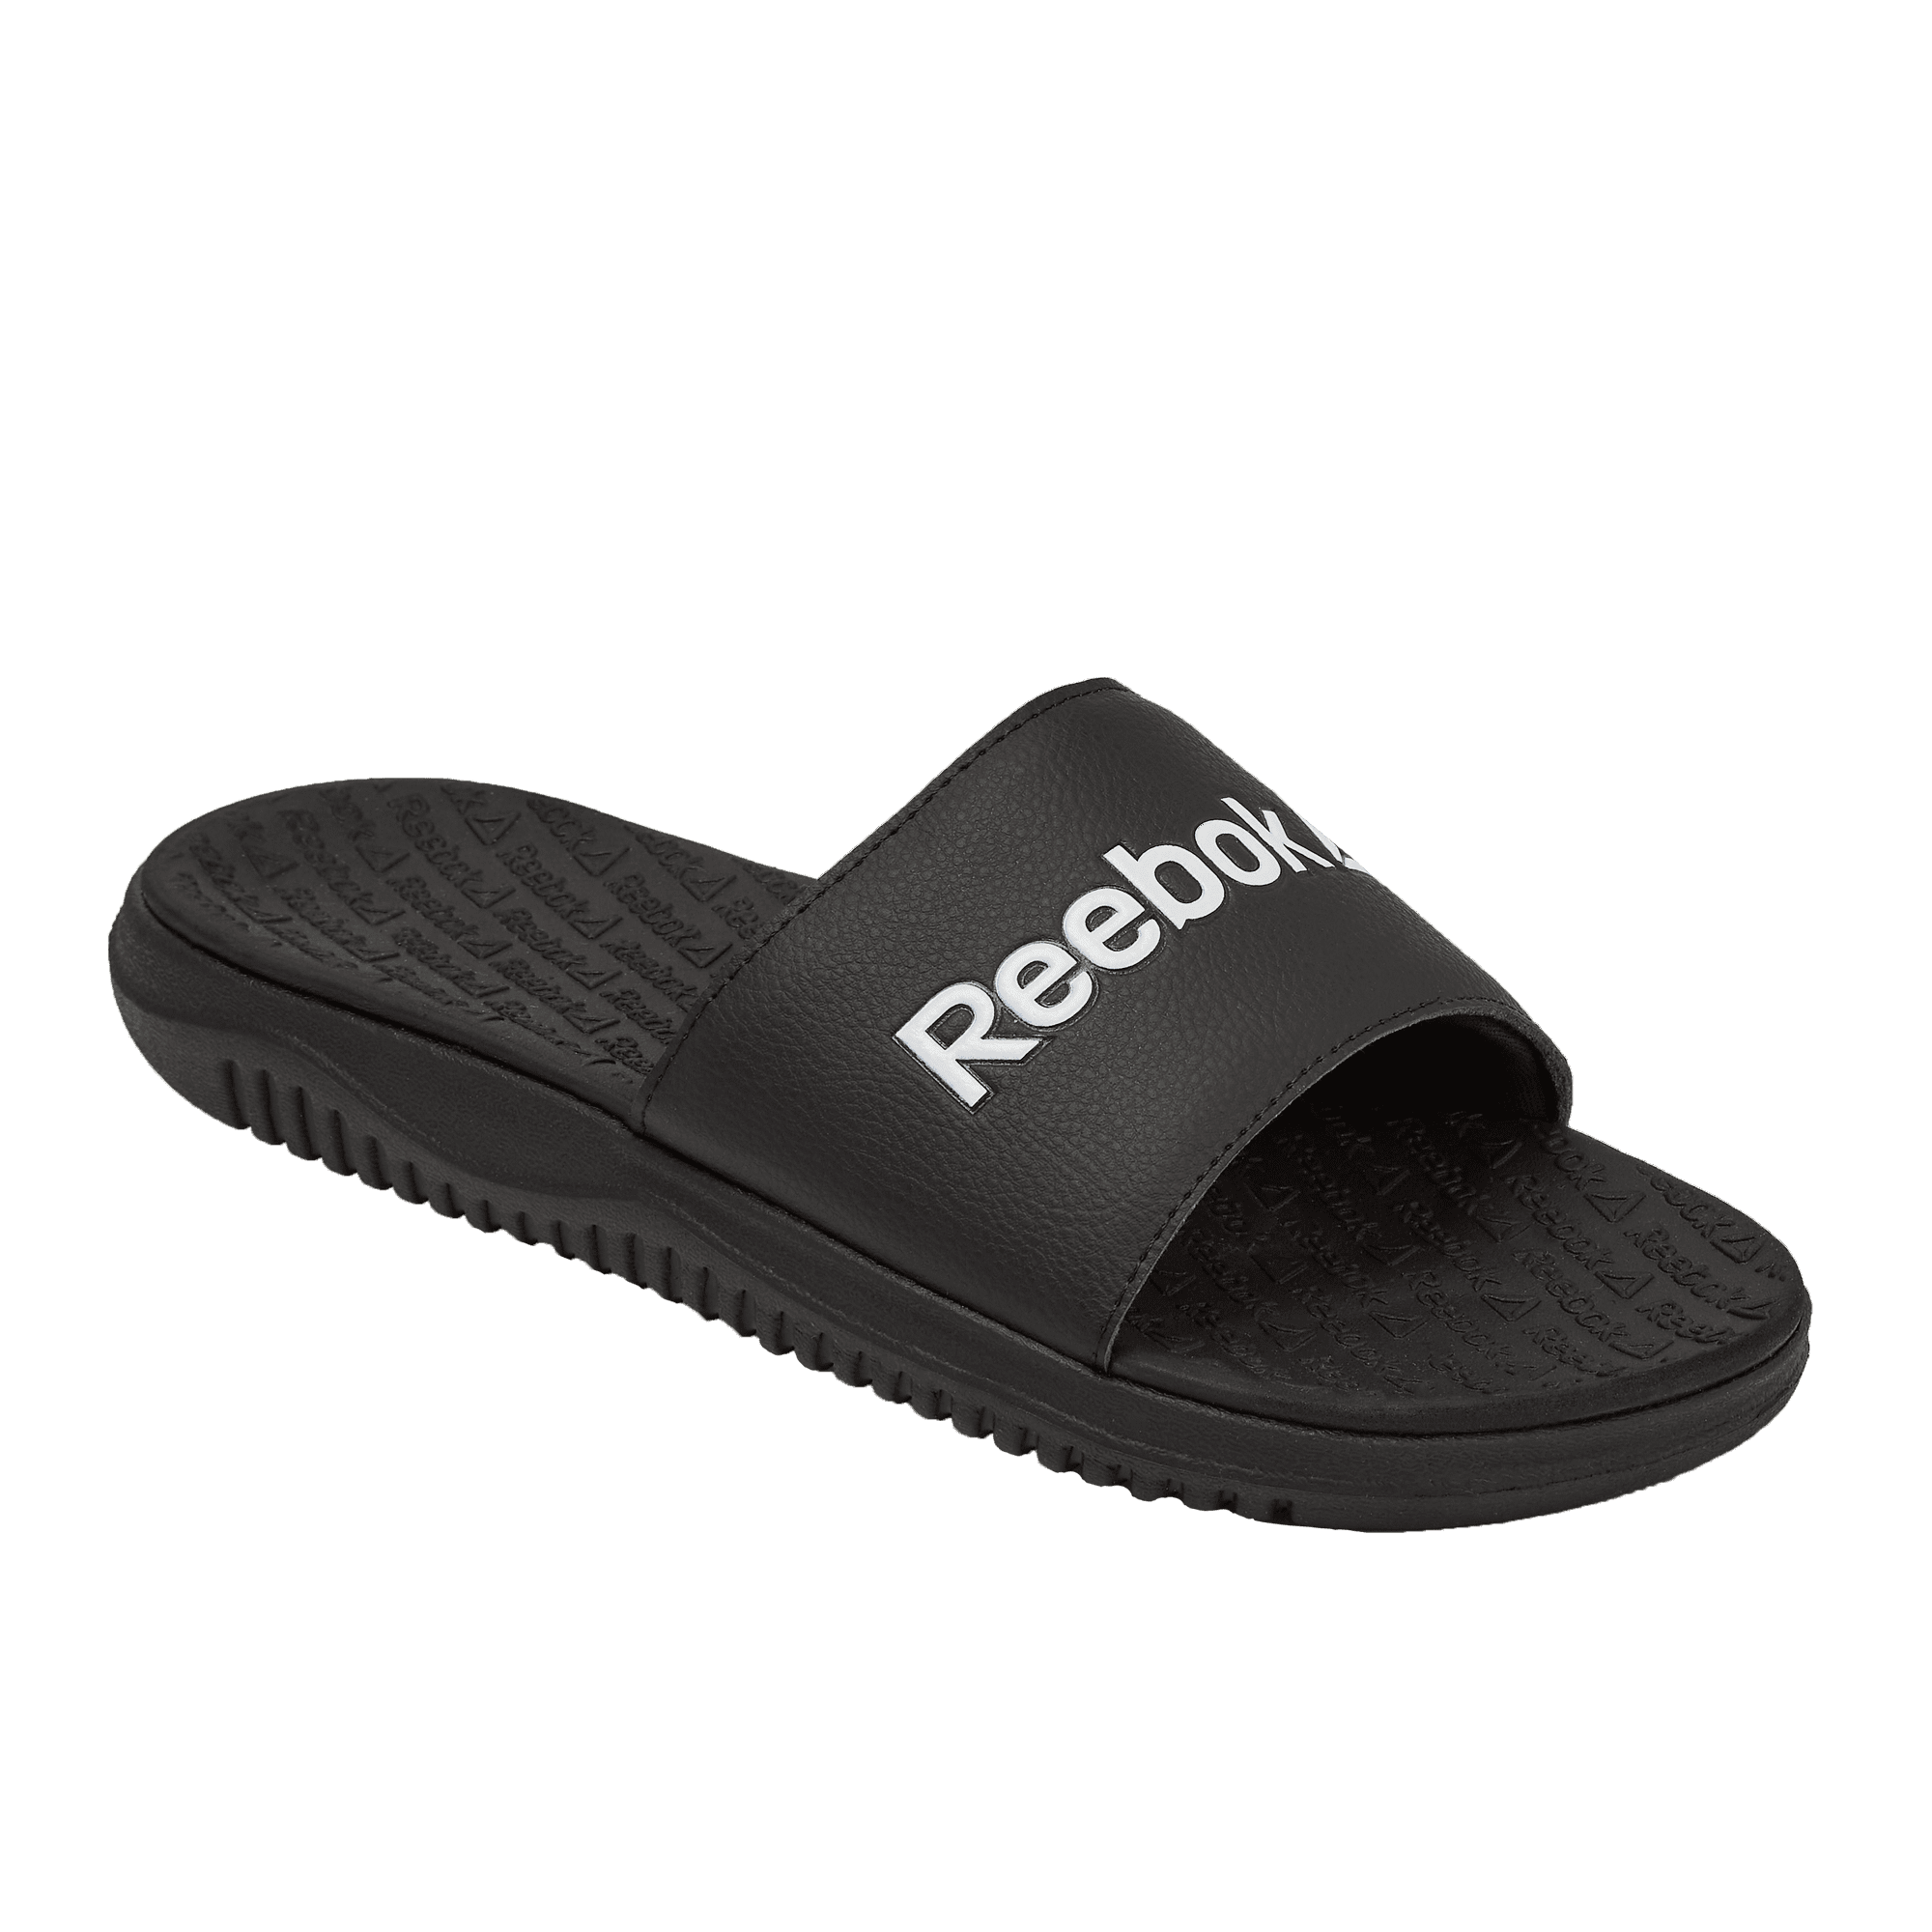 Afsnit Jeg mistede min vej Diagnose Reebok Women's Dual Density Comfort Slide Sandals - Walmart.com